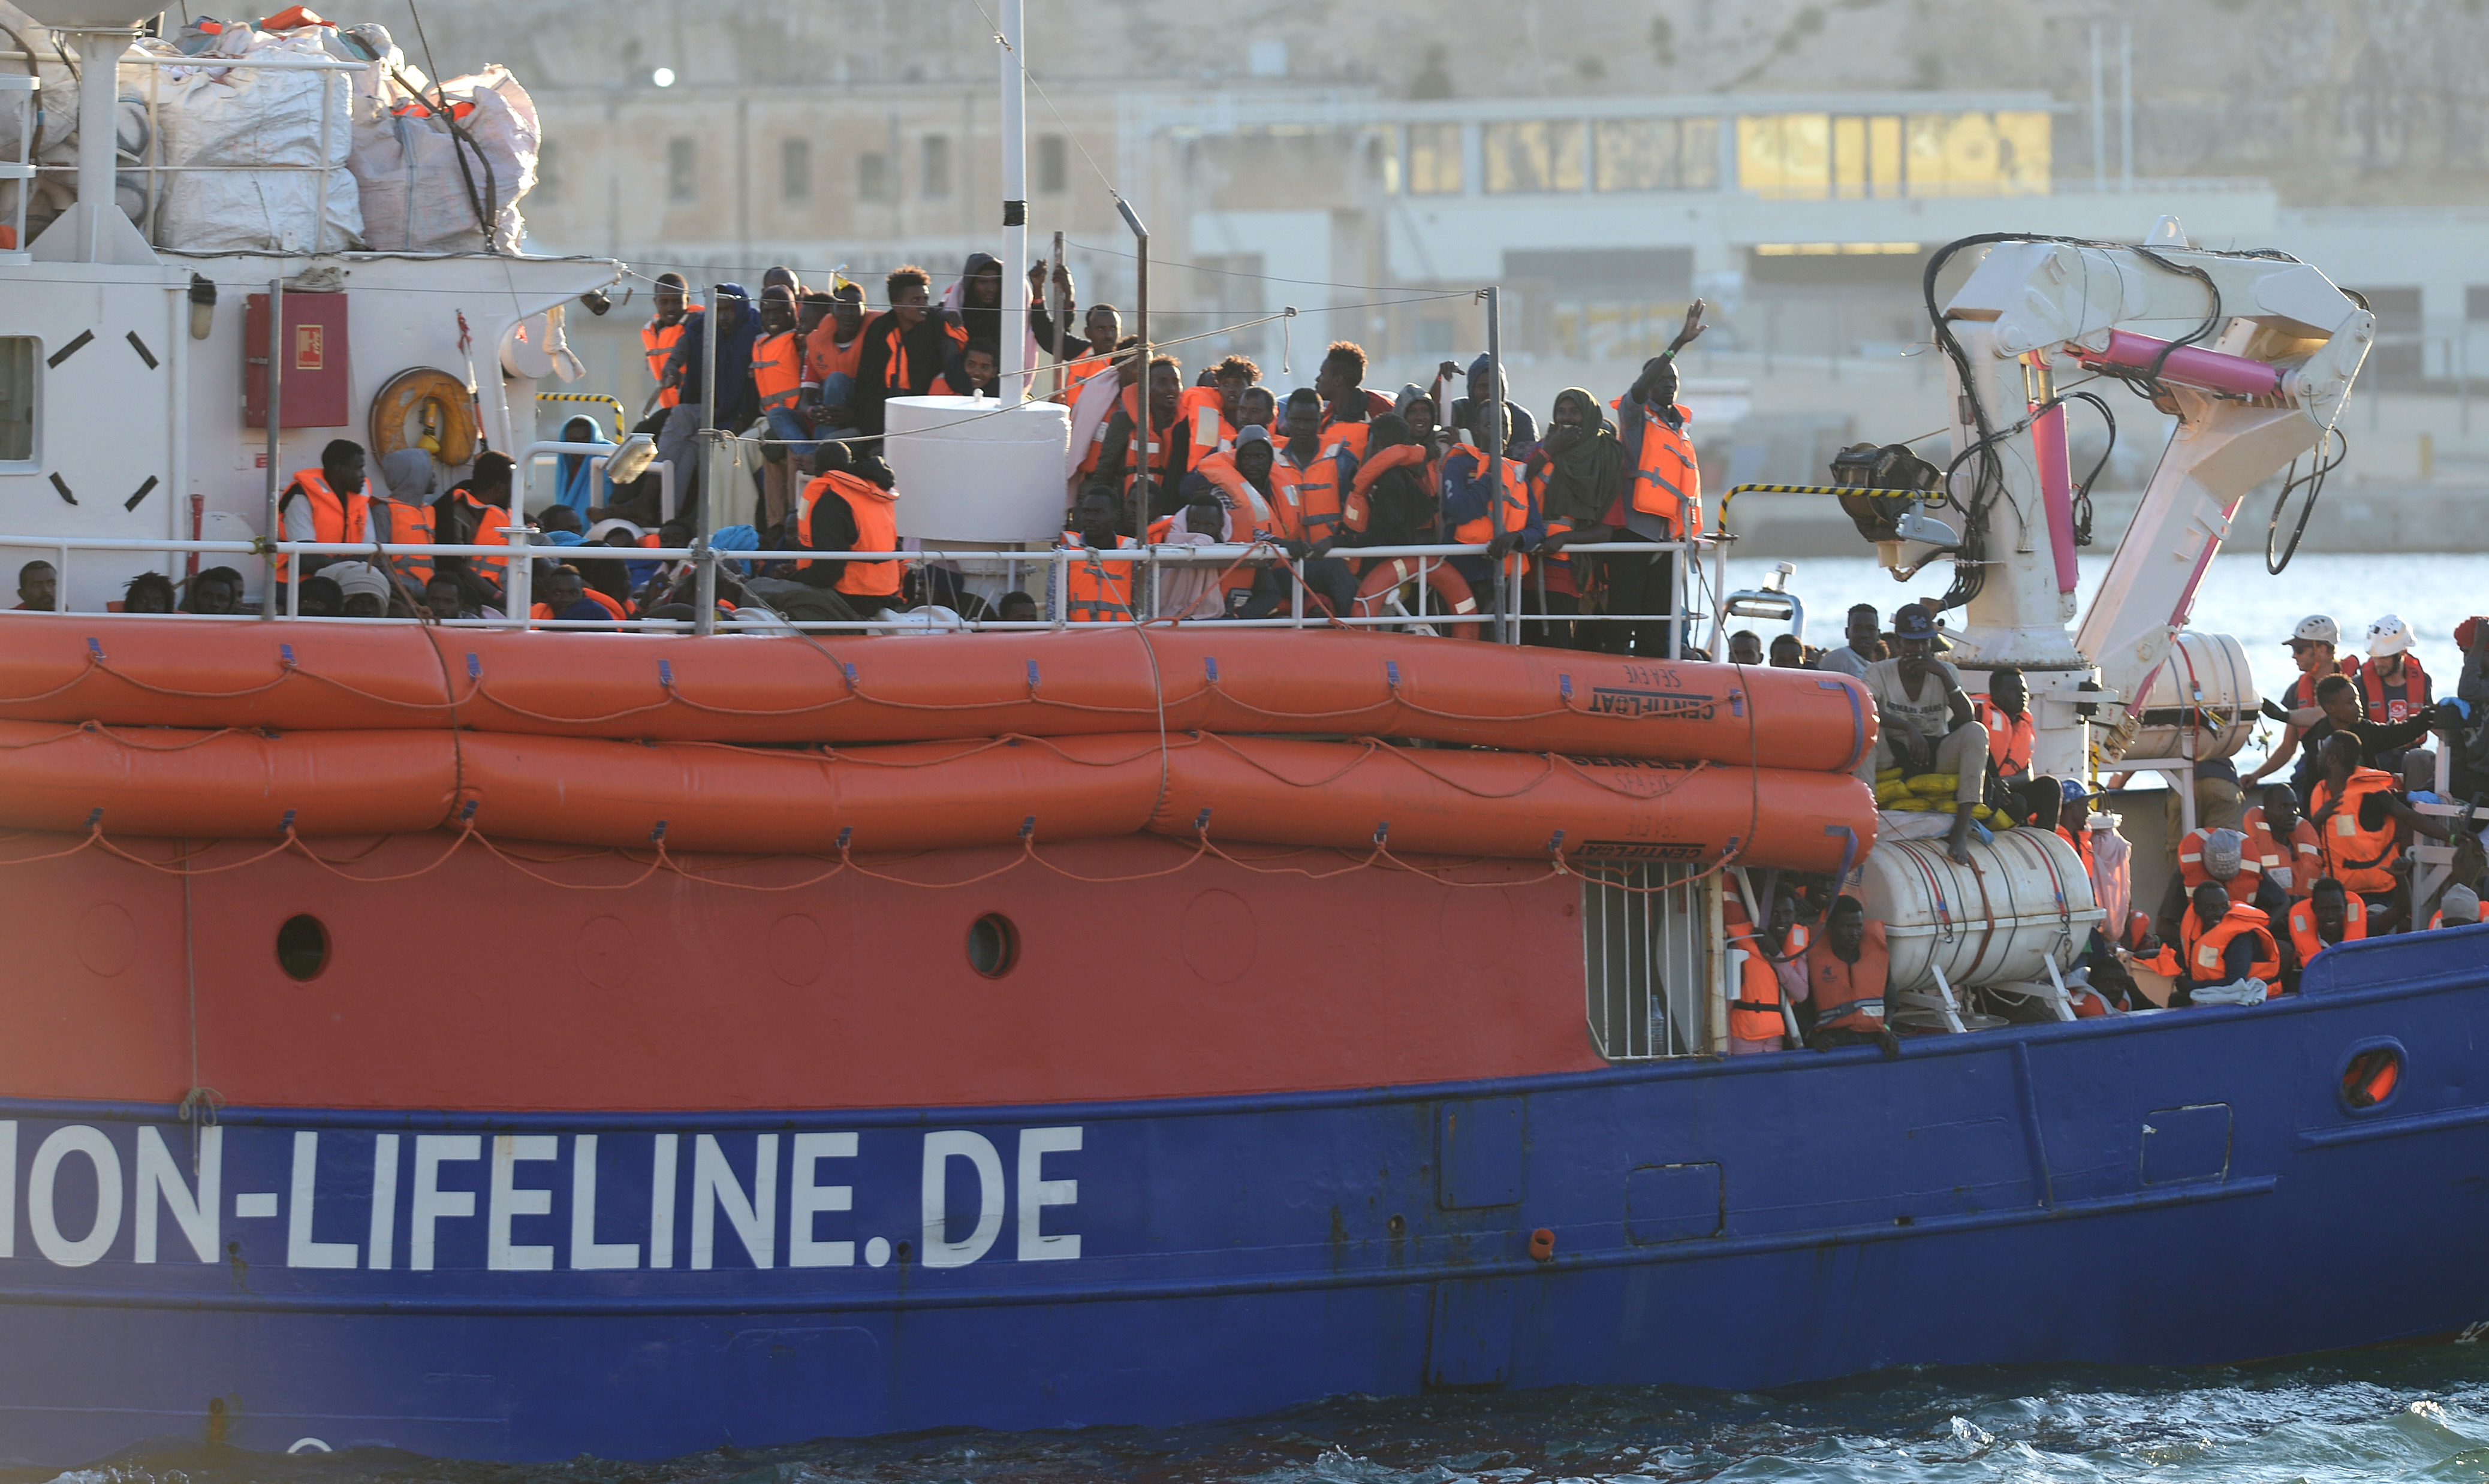 Öt nap várakozás után Máltán köthetett ki a Lifeline mentőhajó